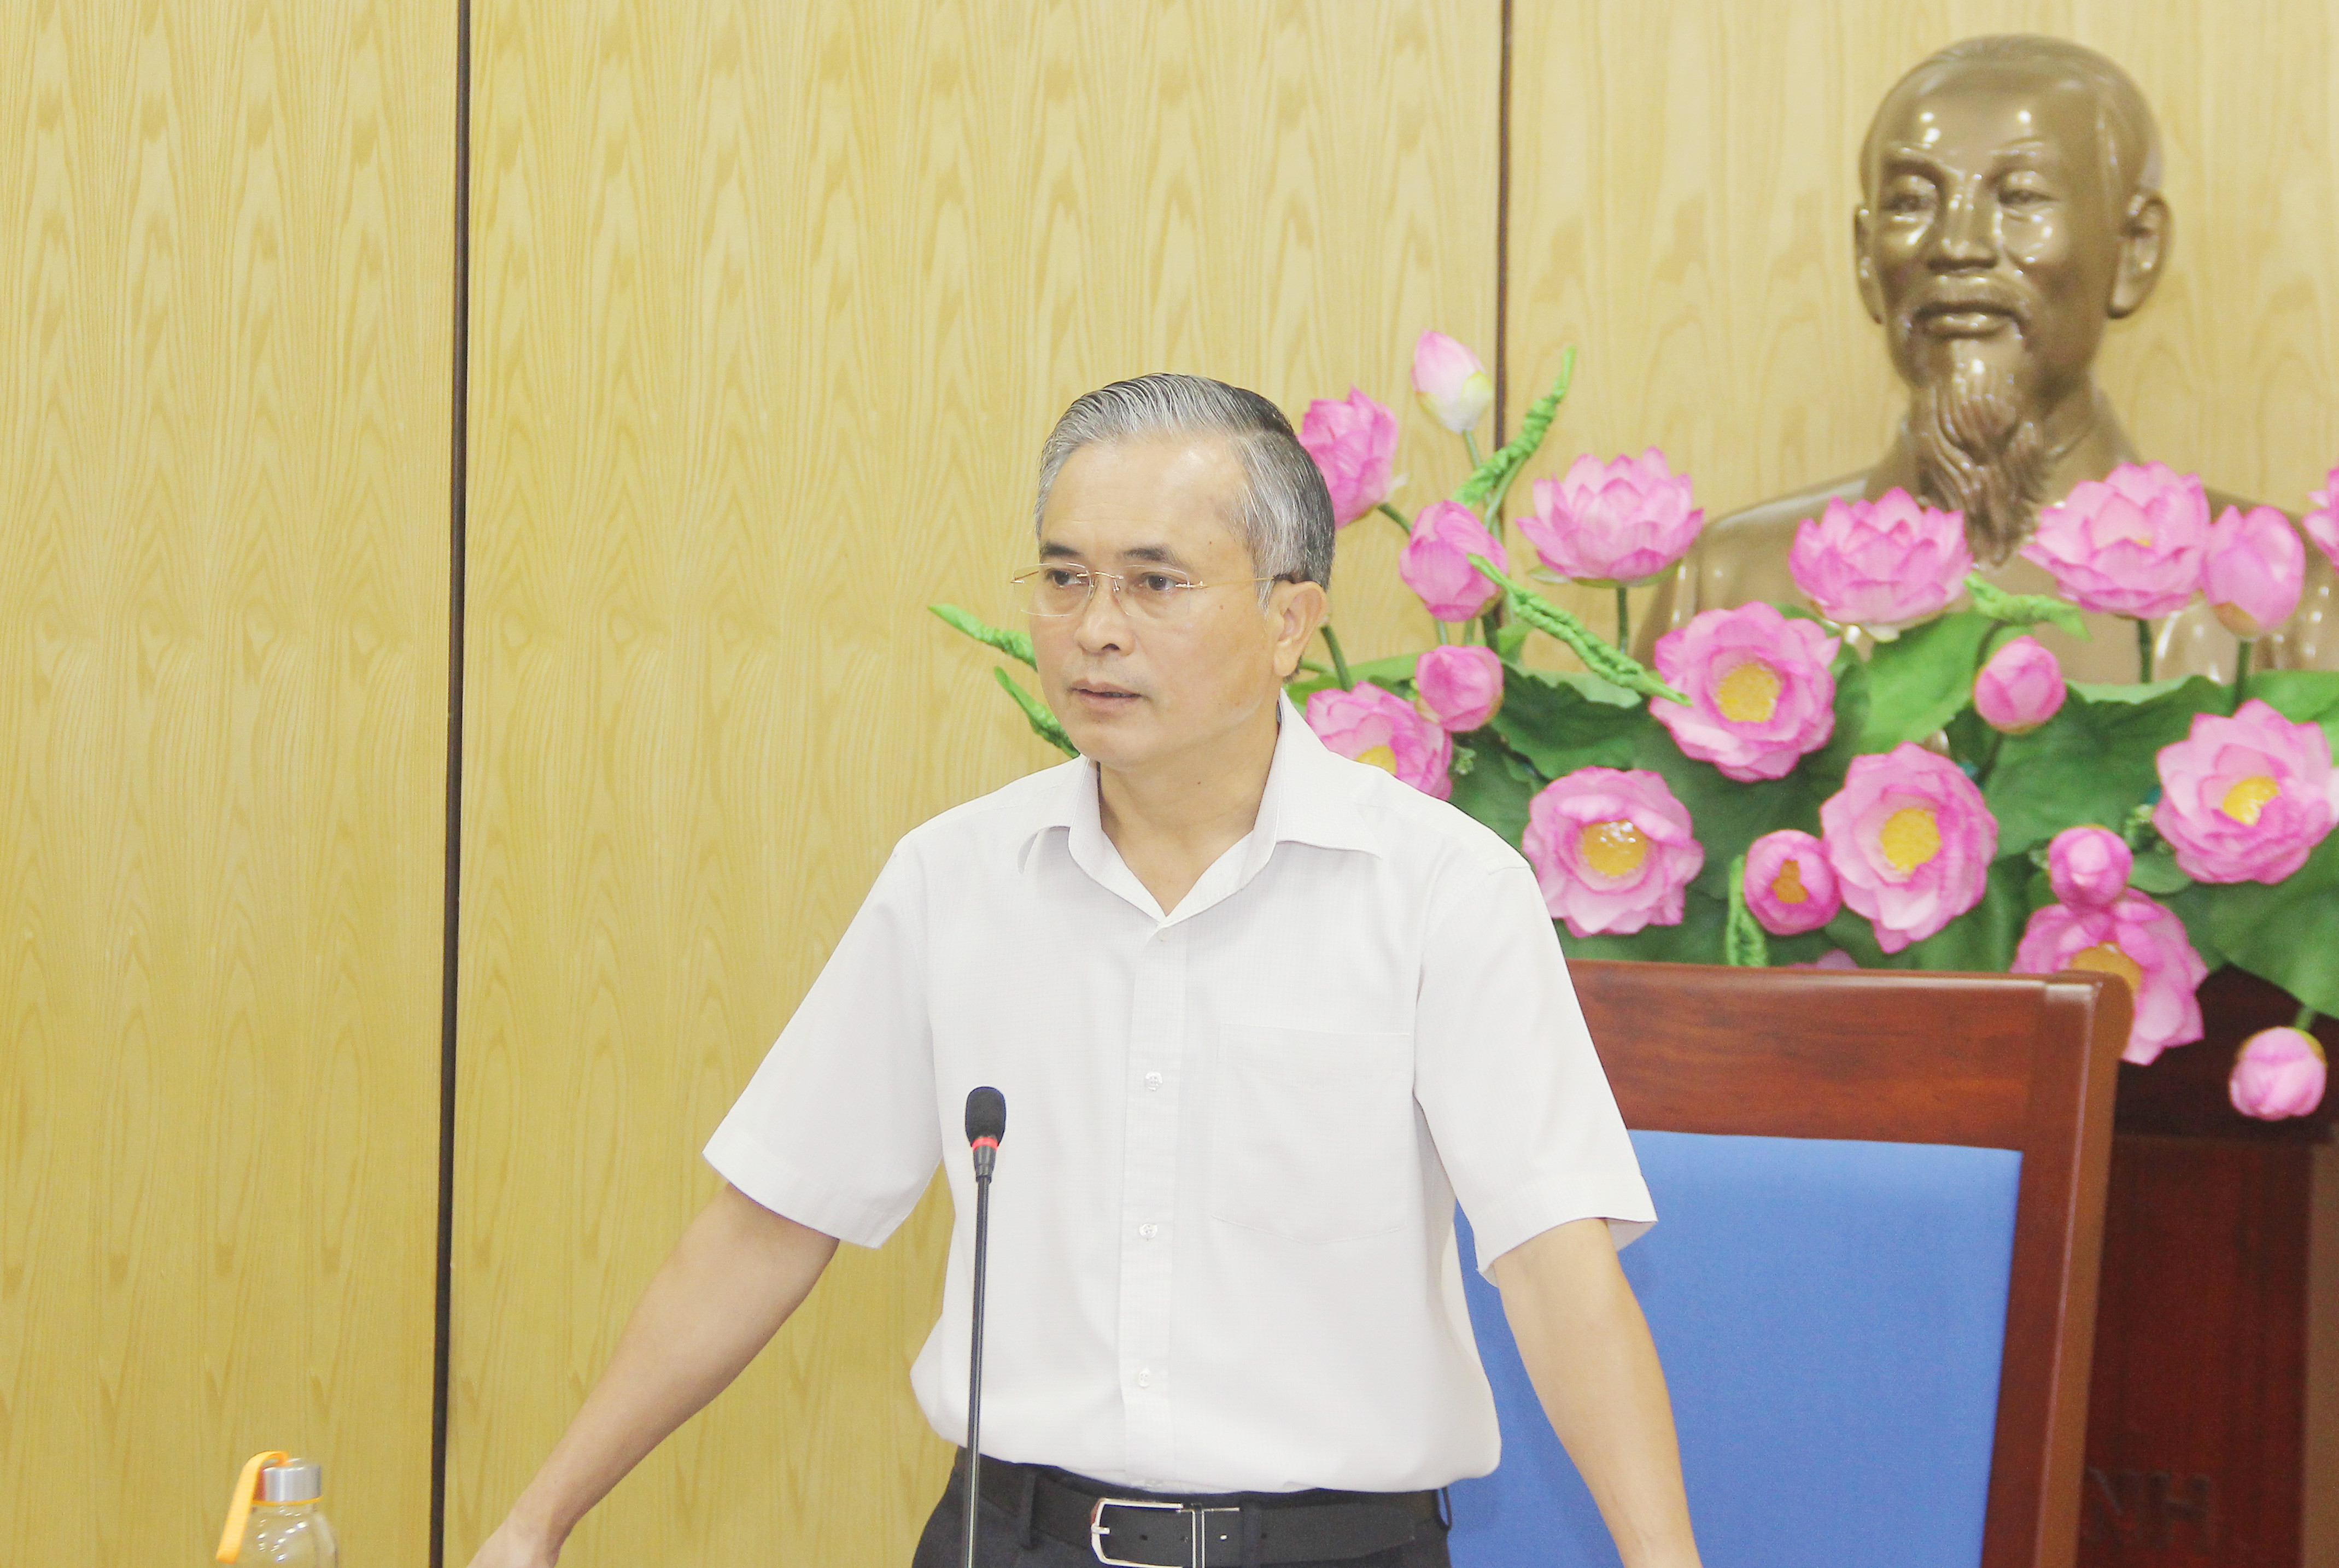 Phó Chủ tịch UBND tỉnh Lê Ngọc Hoa yêu cầu các Sở, ngành, địa phương phối hợp chặt chẽ chủ đầu tư để tháo gỡ các vướng mắc trong giải phóng mặt bằng phục vụ dự án. Ảnh: Mai Hoa